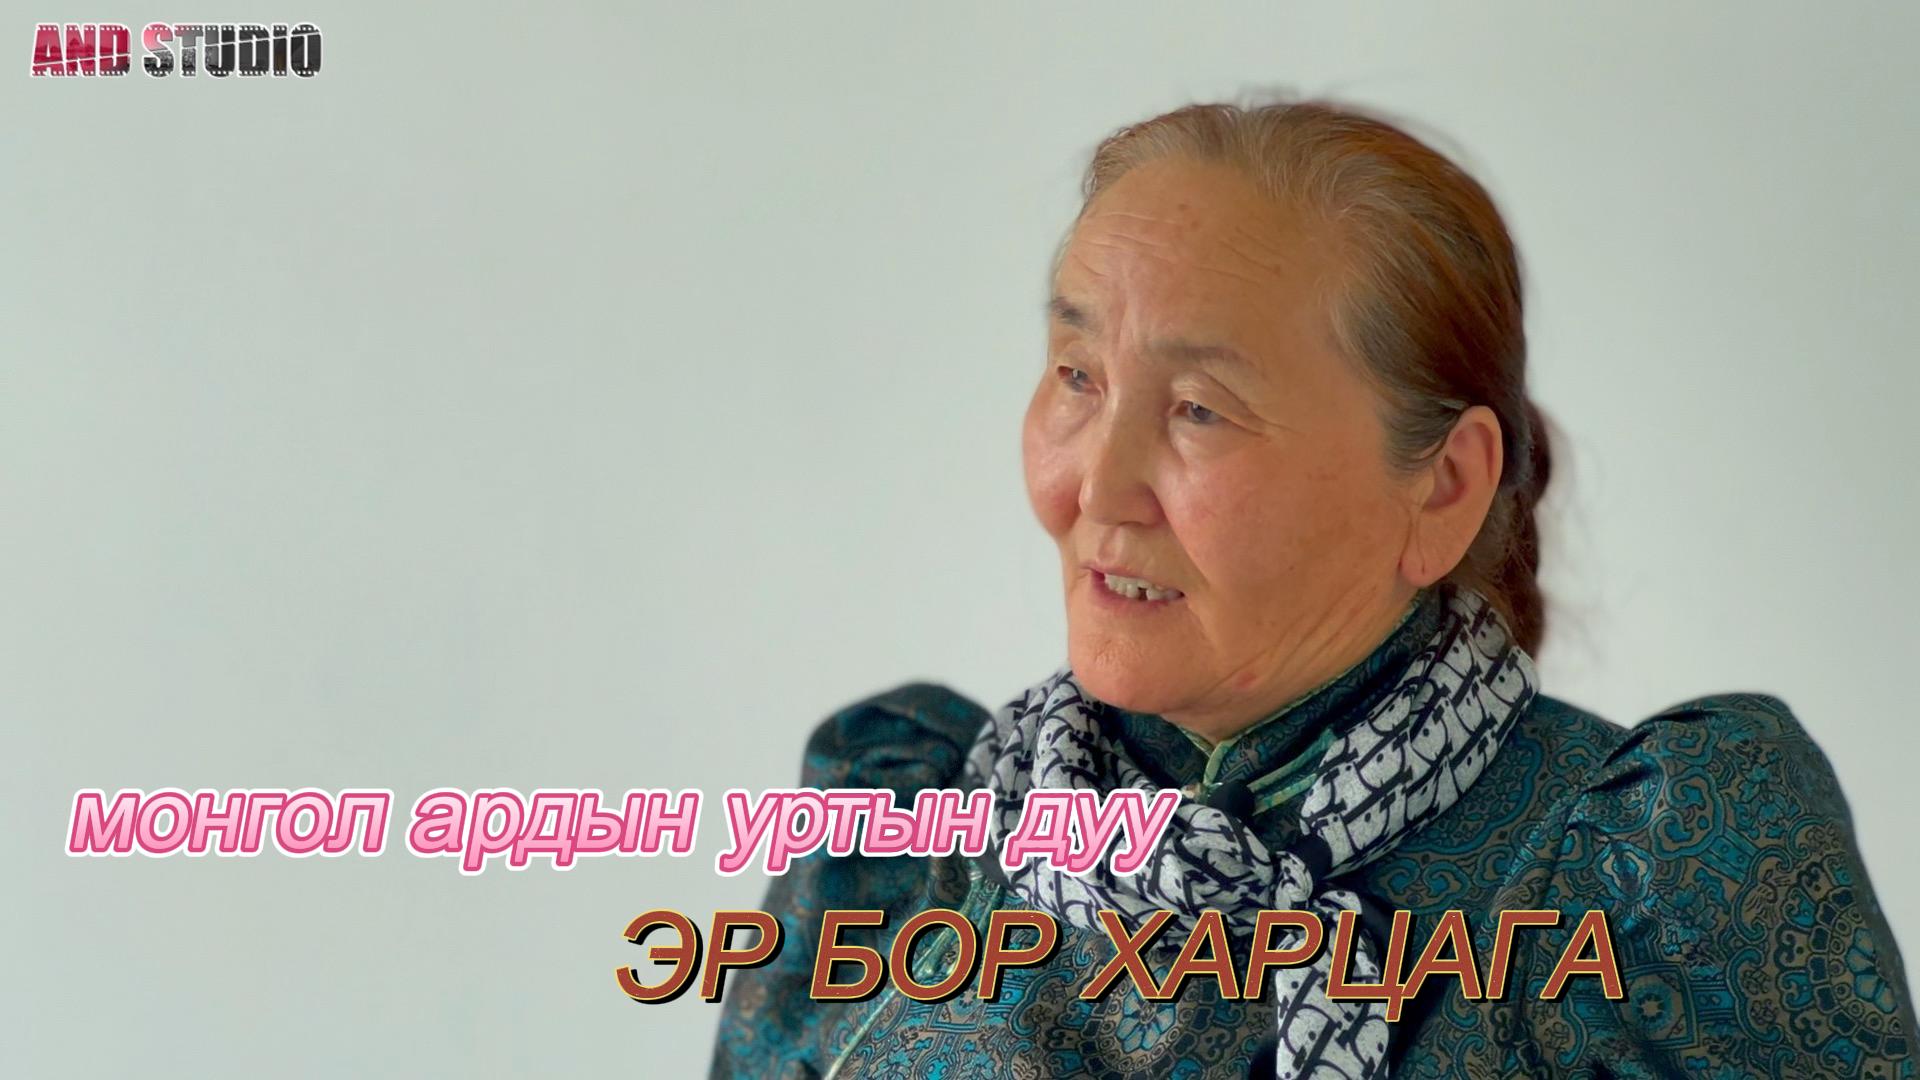 Монгол ардын уртын дуу: Эр бор харцага